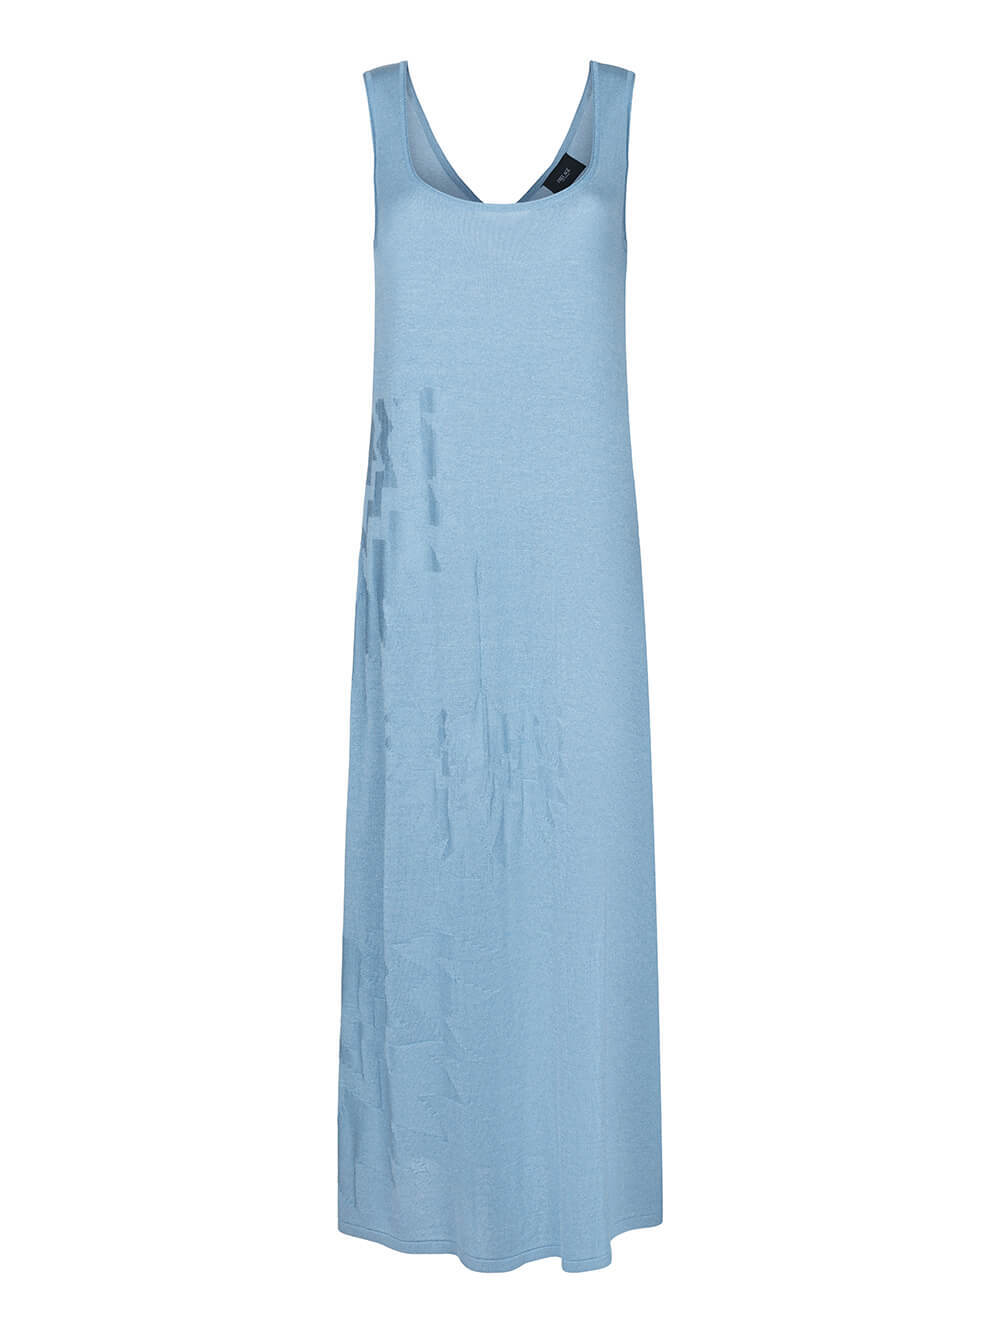 Женское платье синего цвета из шелка и вискозы - фото 1